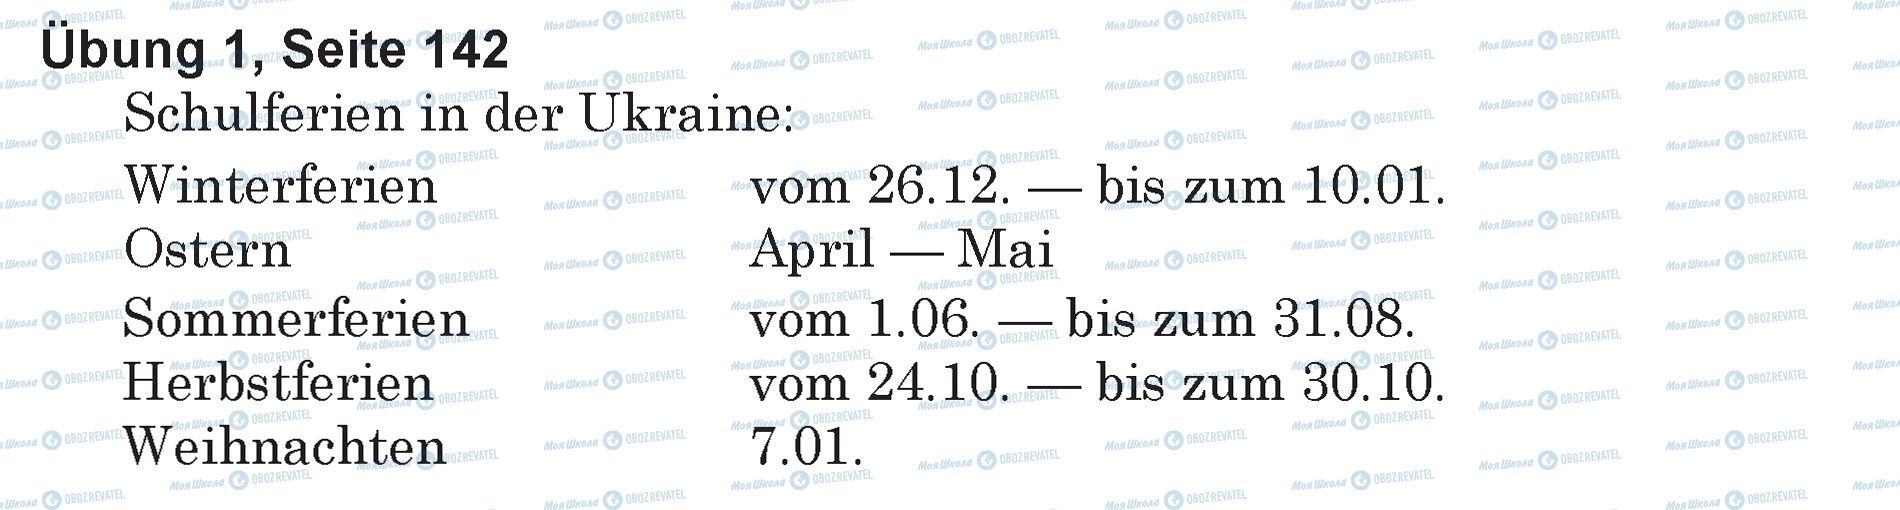 ГДЗ Німецька мова 5 клас сторінка Ubung 1, Seite 142